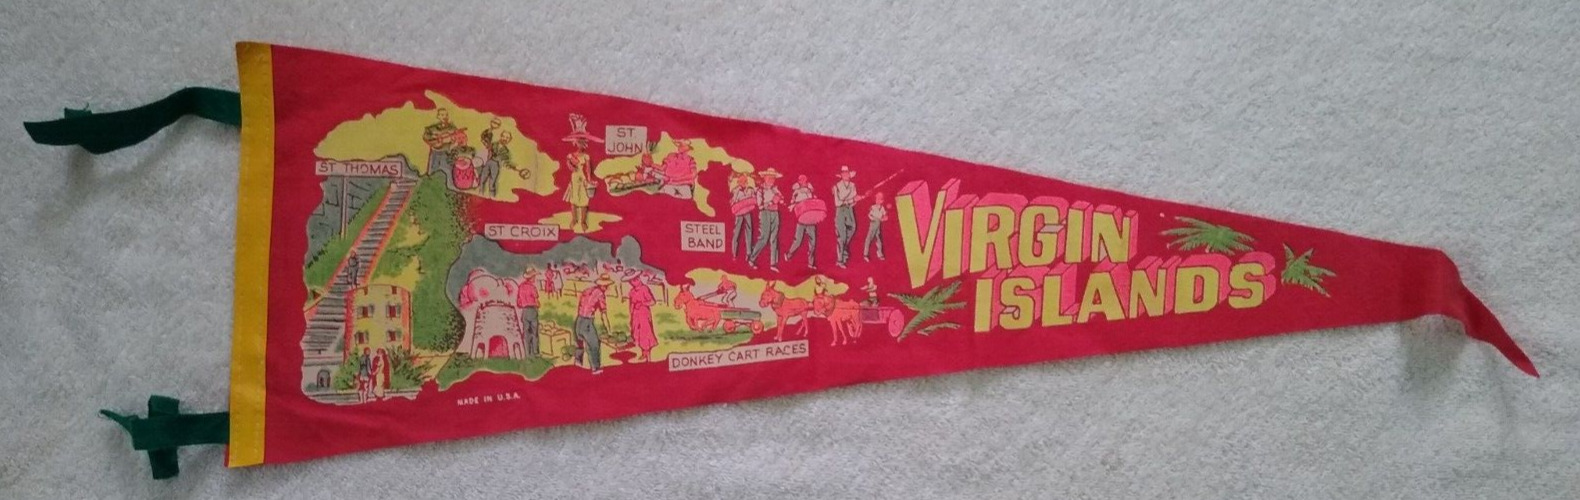 26" Vintage Virgin Islands Caribbean Souvenir Felt Pennant